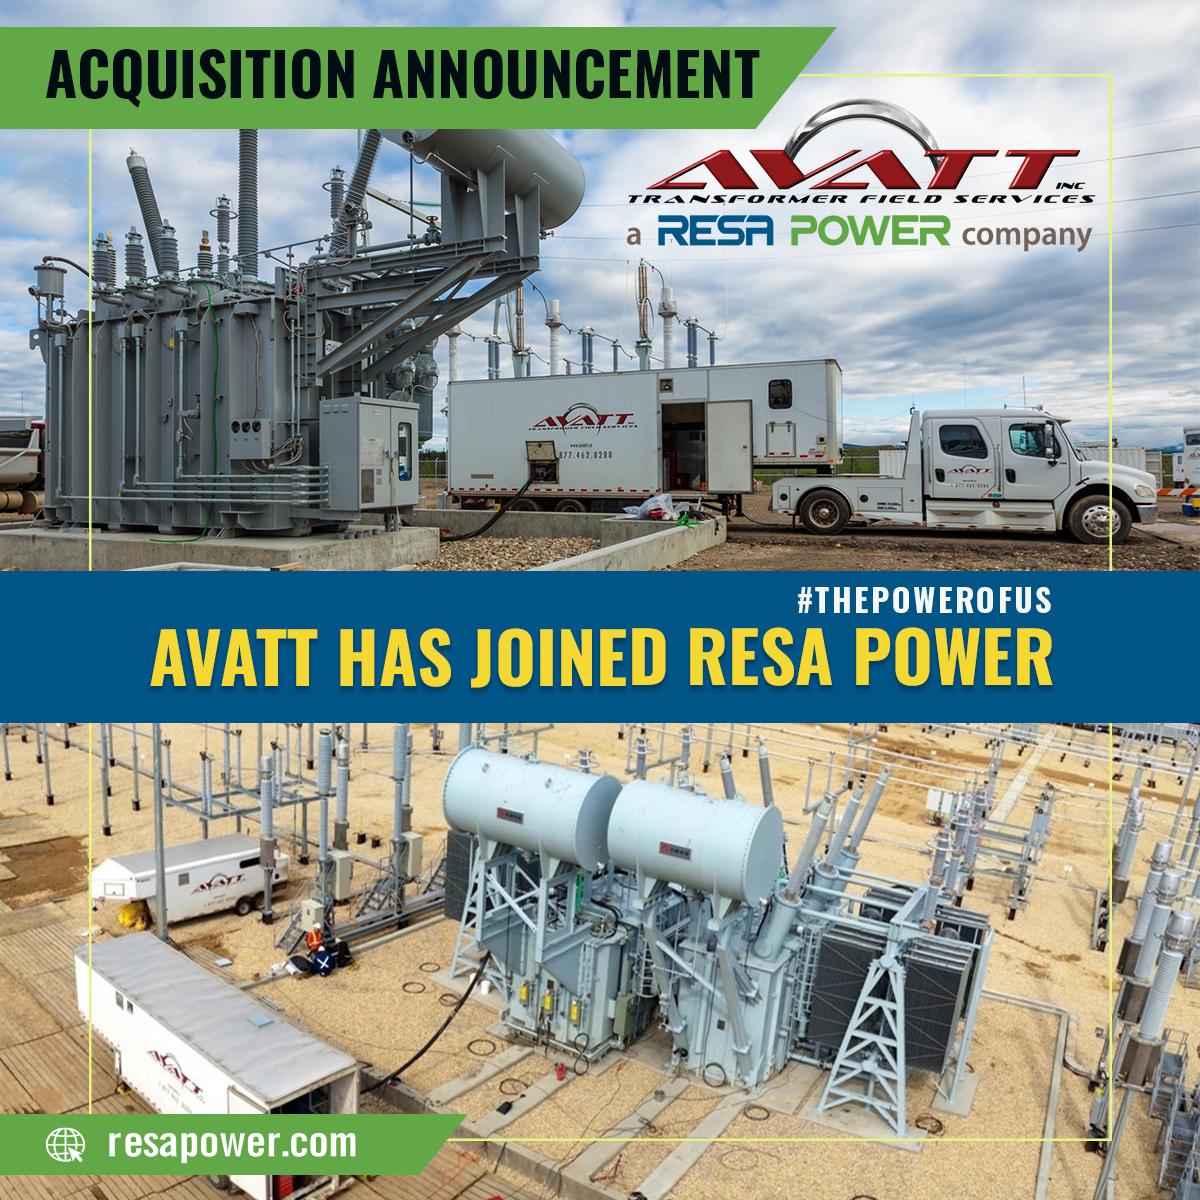 AVATT has joined RESAS Power